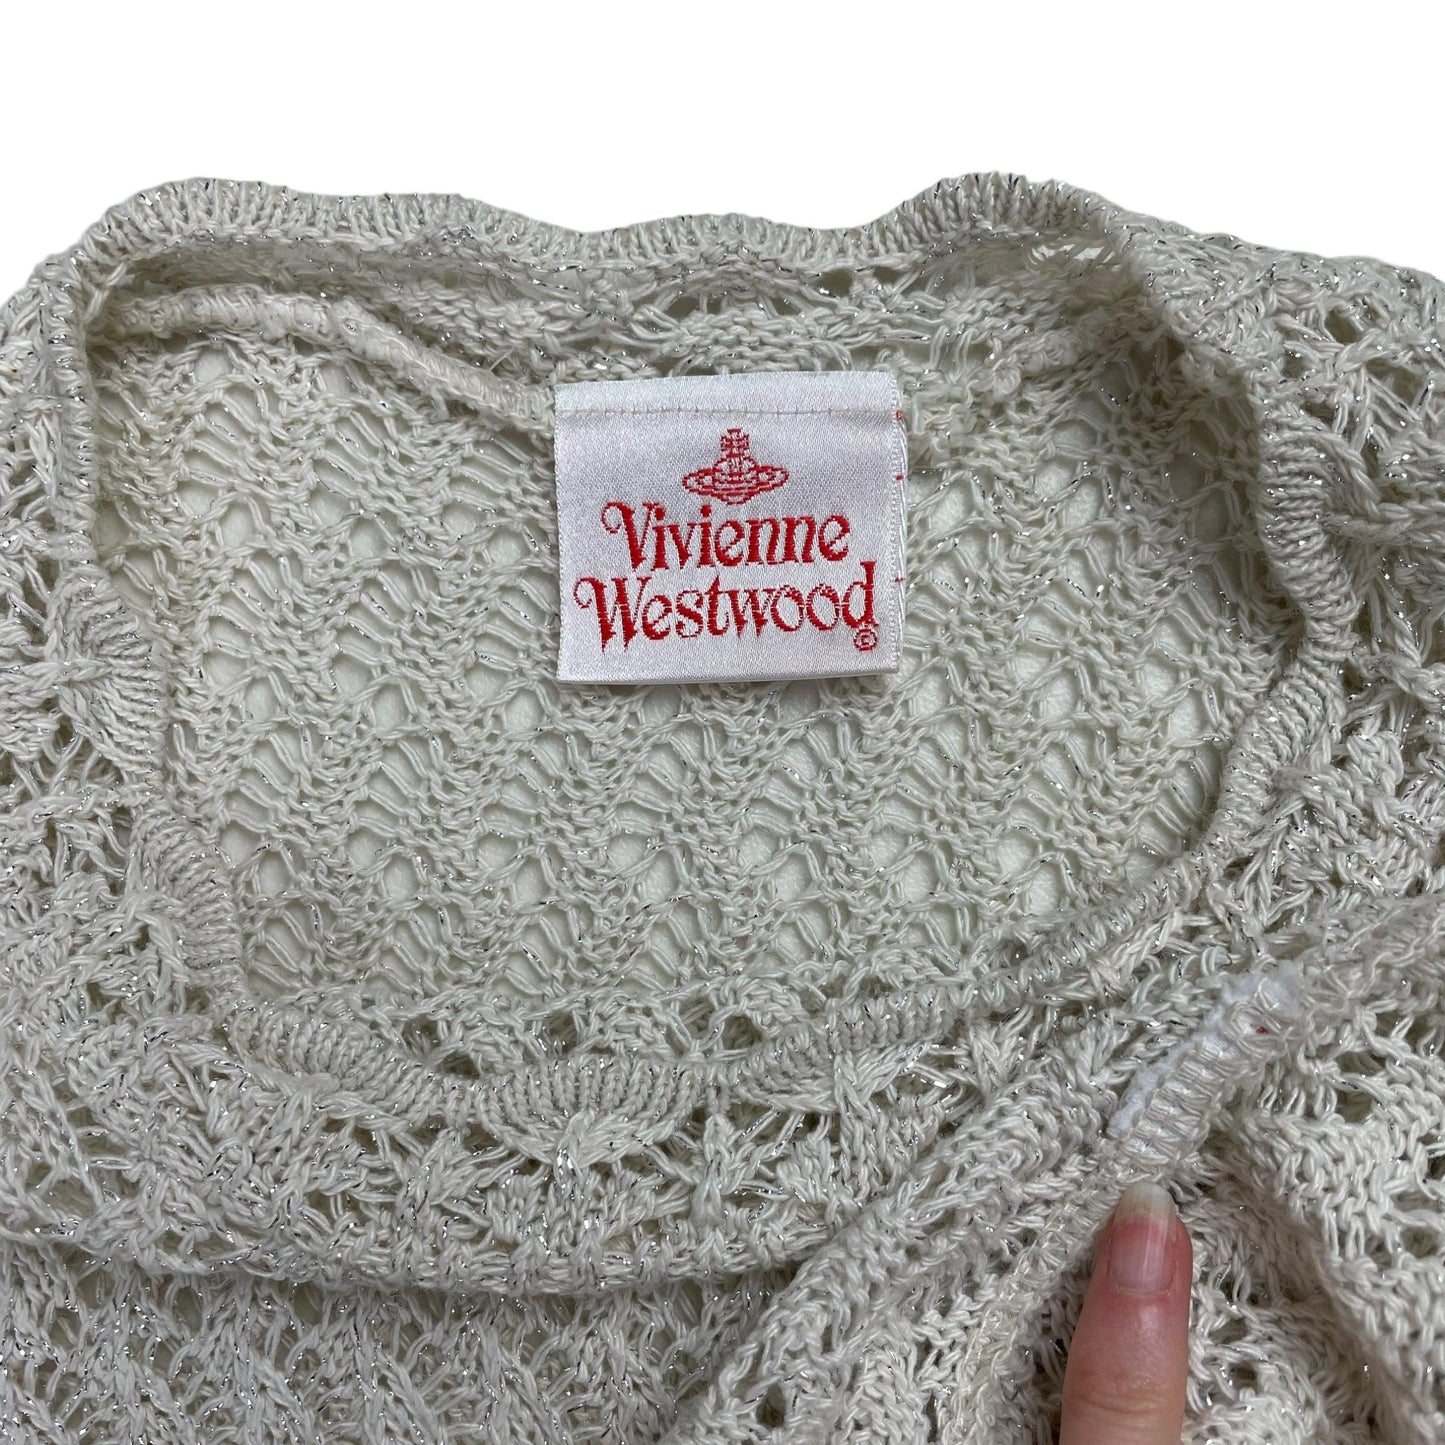 c.1994 Vivienne Westwood crochet knit dress - Known Source